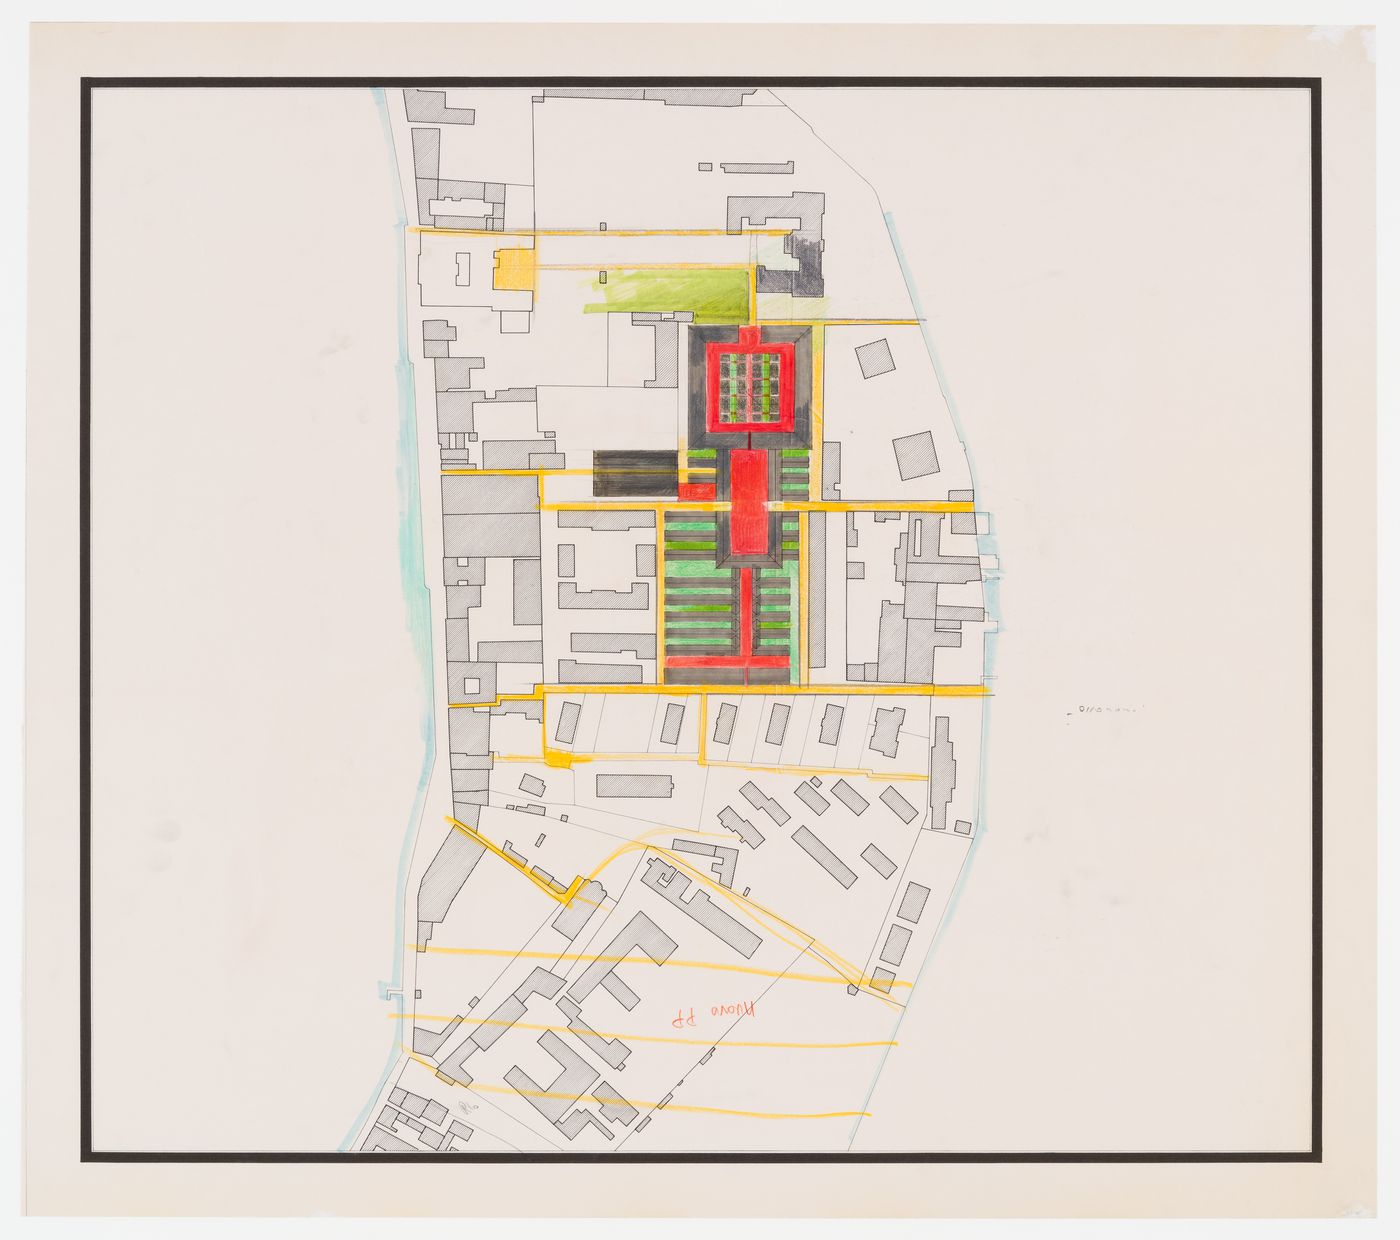 Project for redevelopment of the Campo di Marte area of La Giudecca, Venice, Italy: site plan